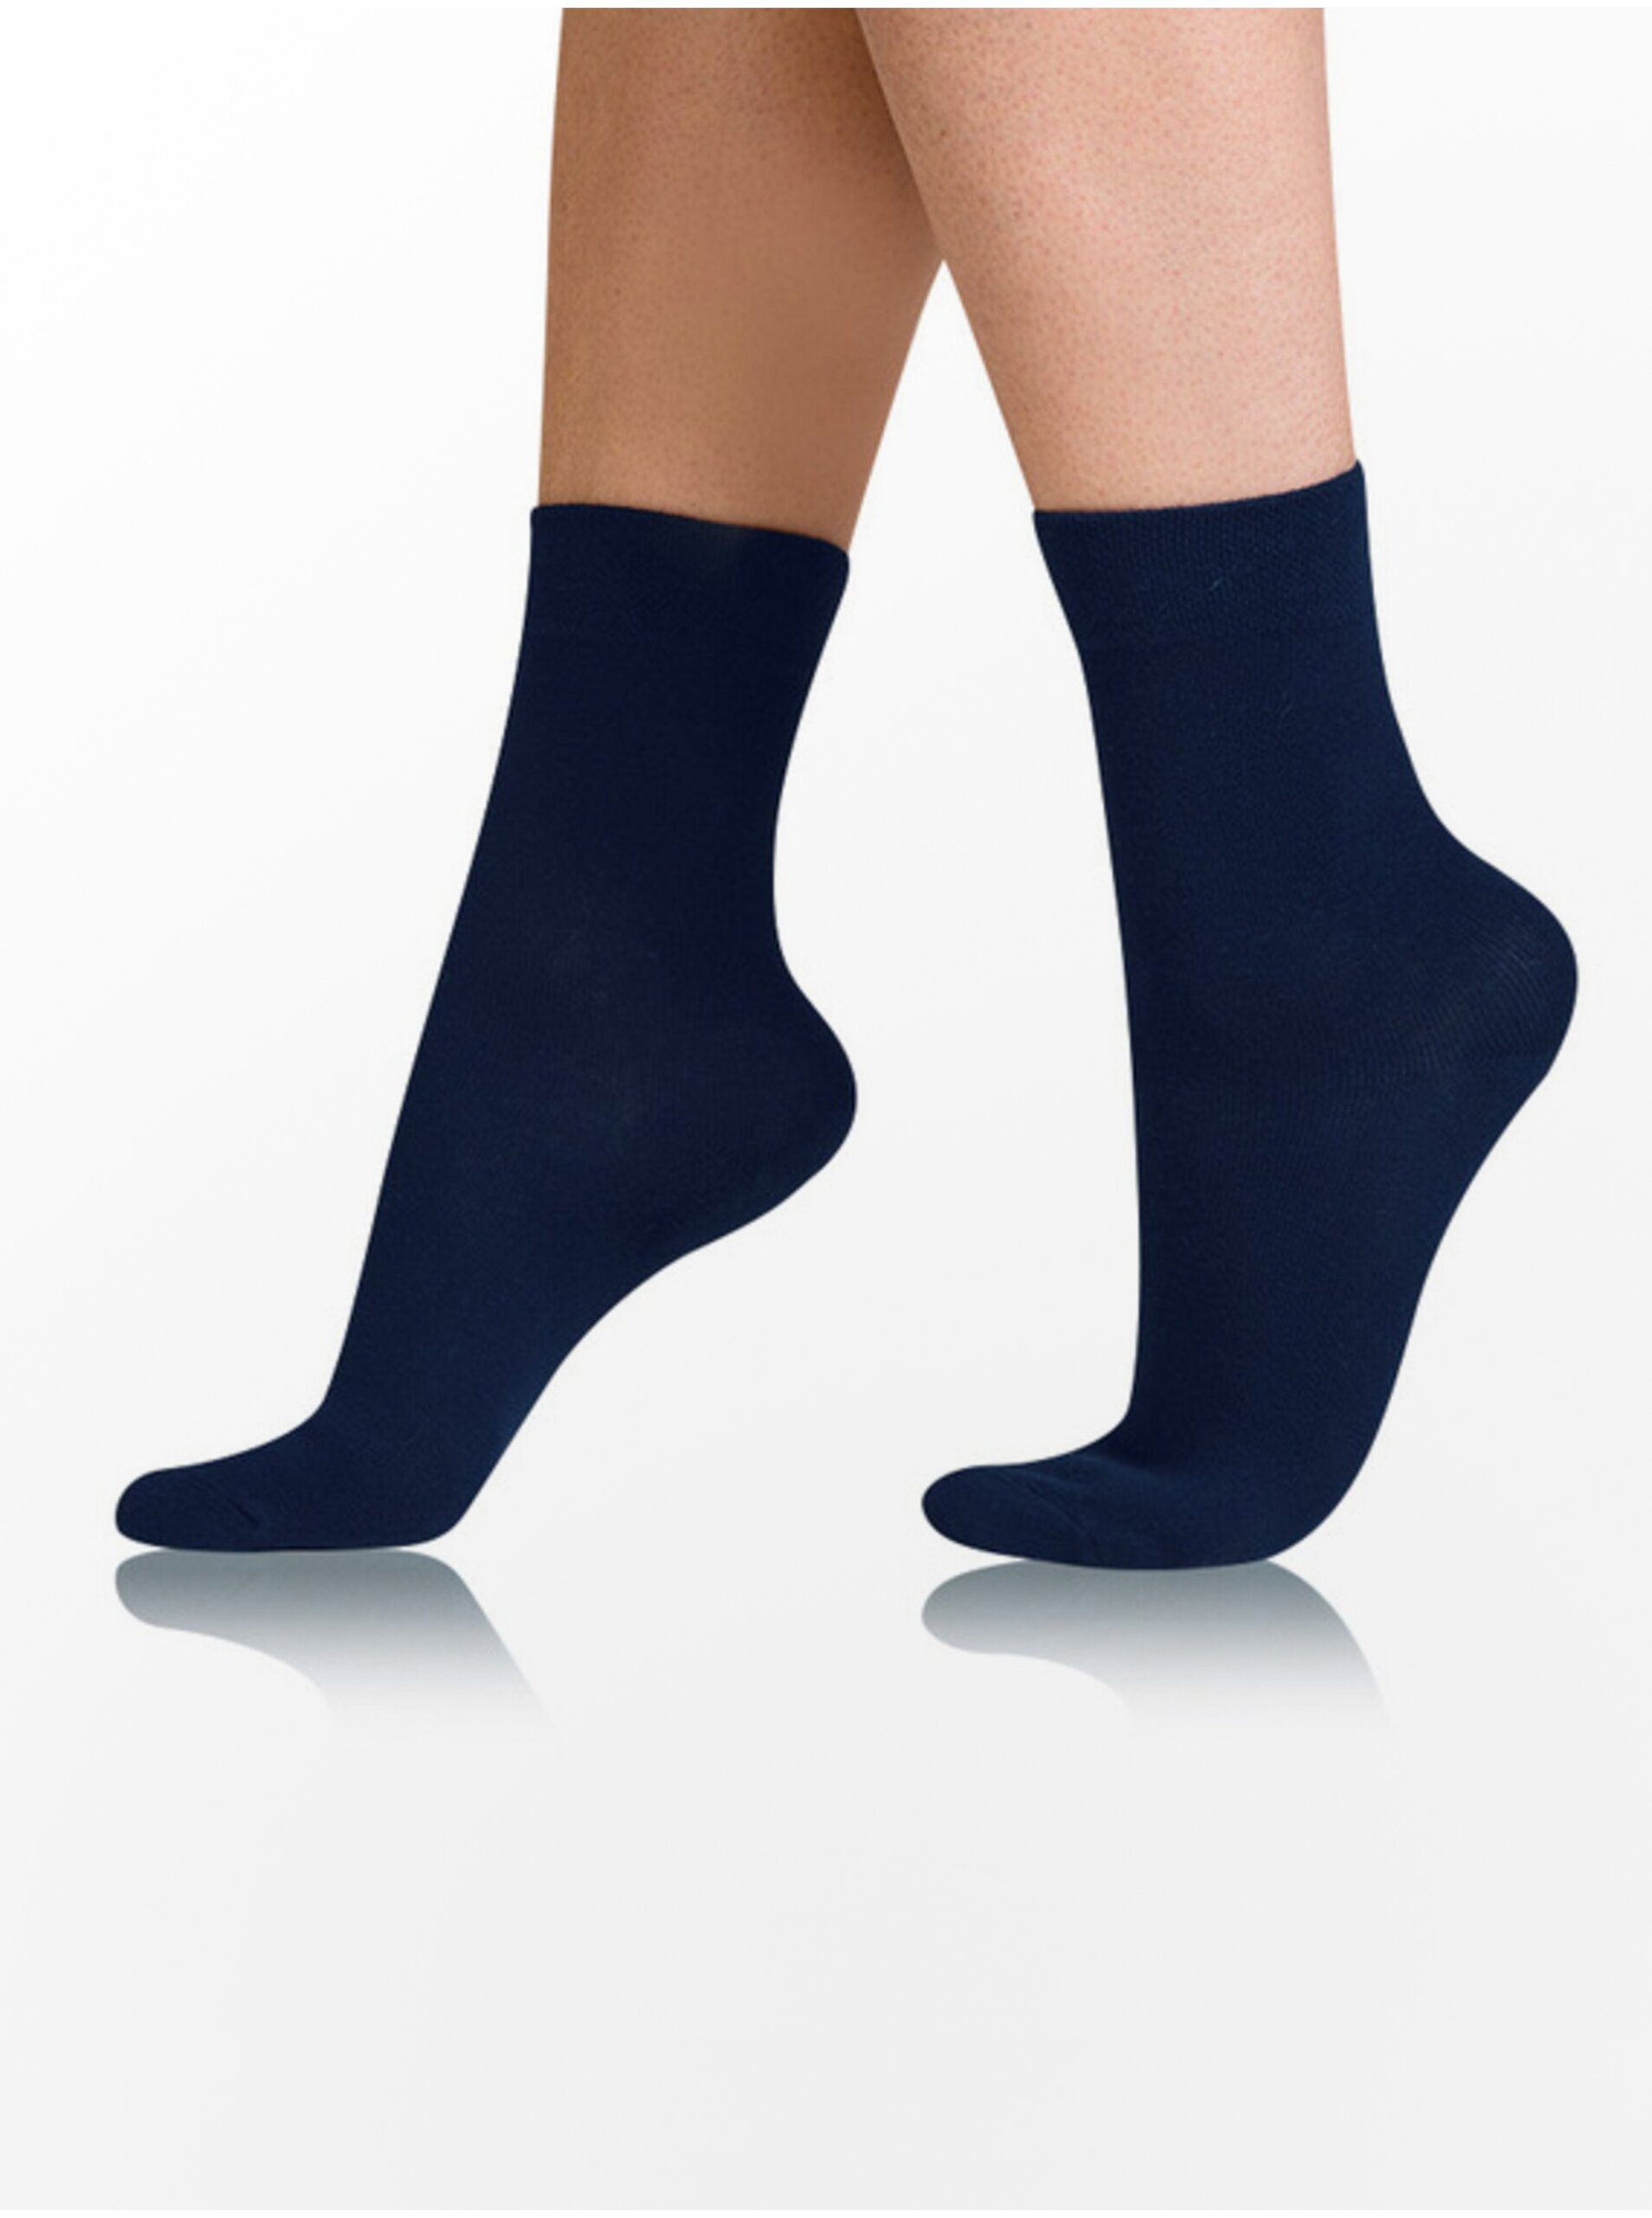 E-shop Tmavě modré dámské ponožky Bellinda COTTON COMFORT SOCKS